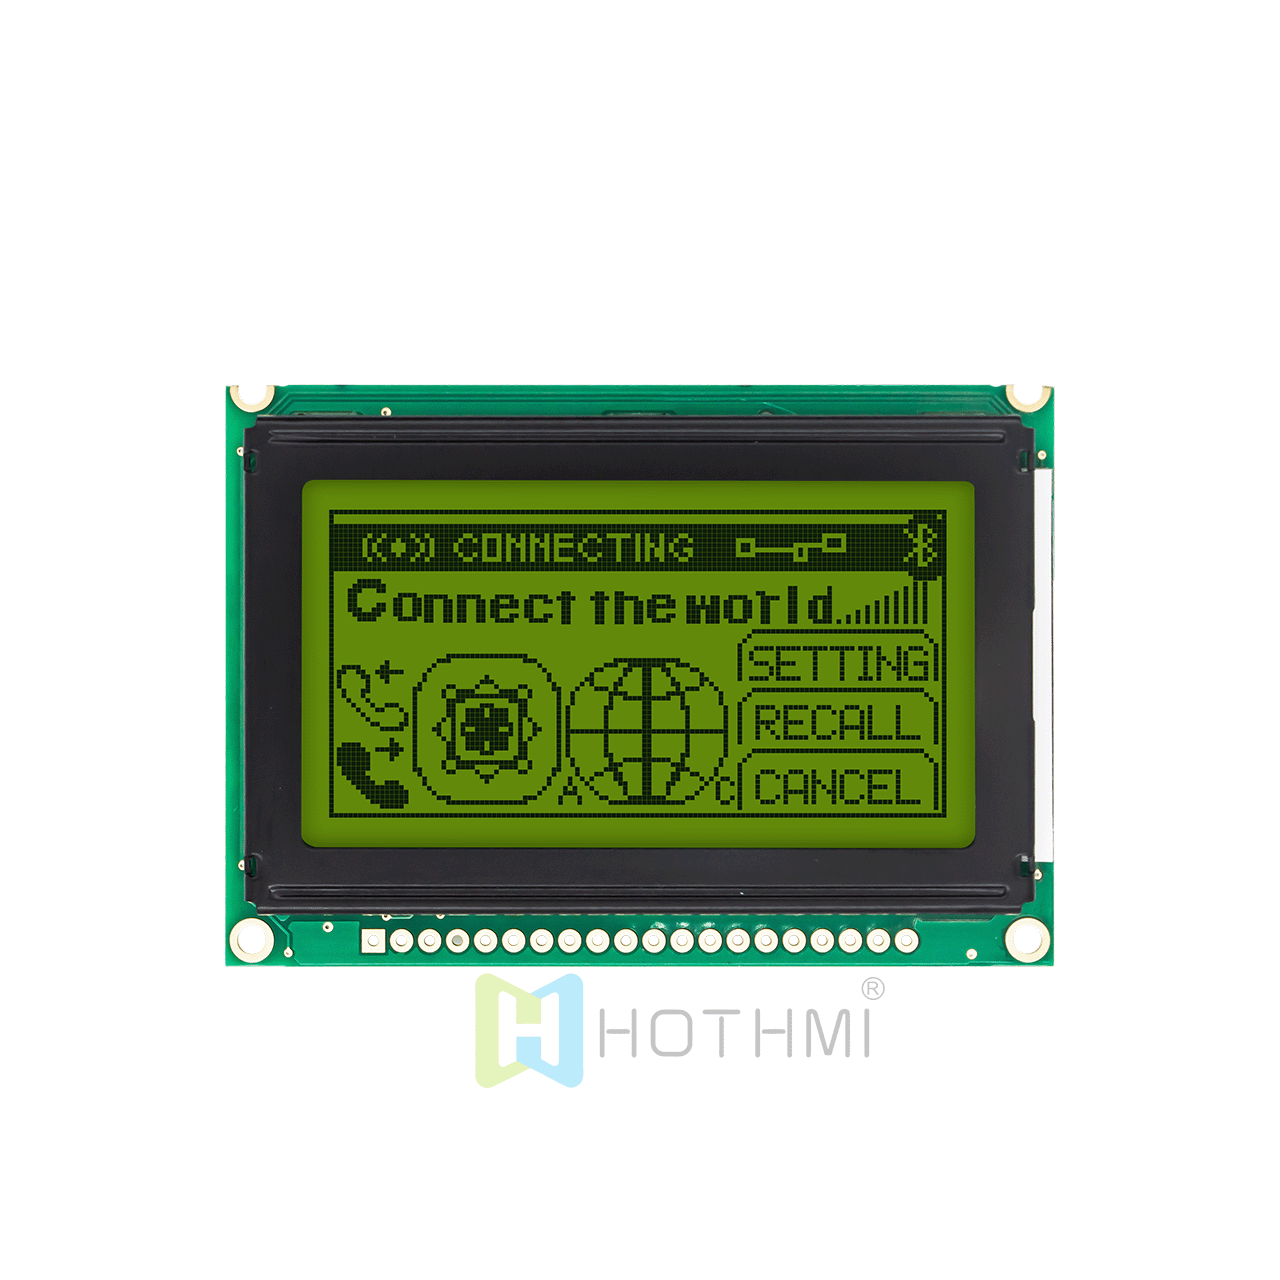 2.7英寸 128 x 64 图形液晶显示器 | 12864 图形 LCD  |  STN +黄绿背光 | 半透偏光片